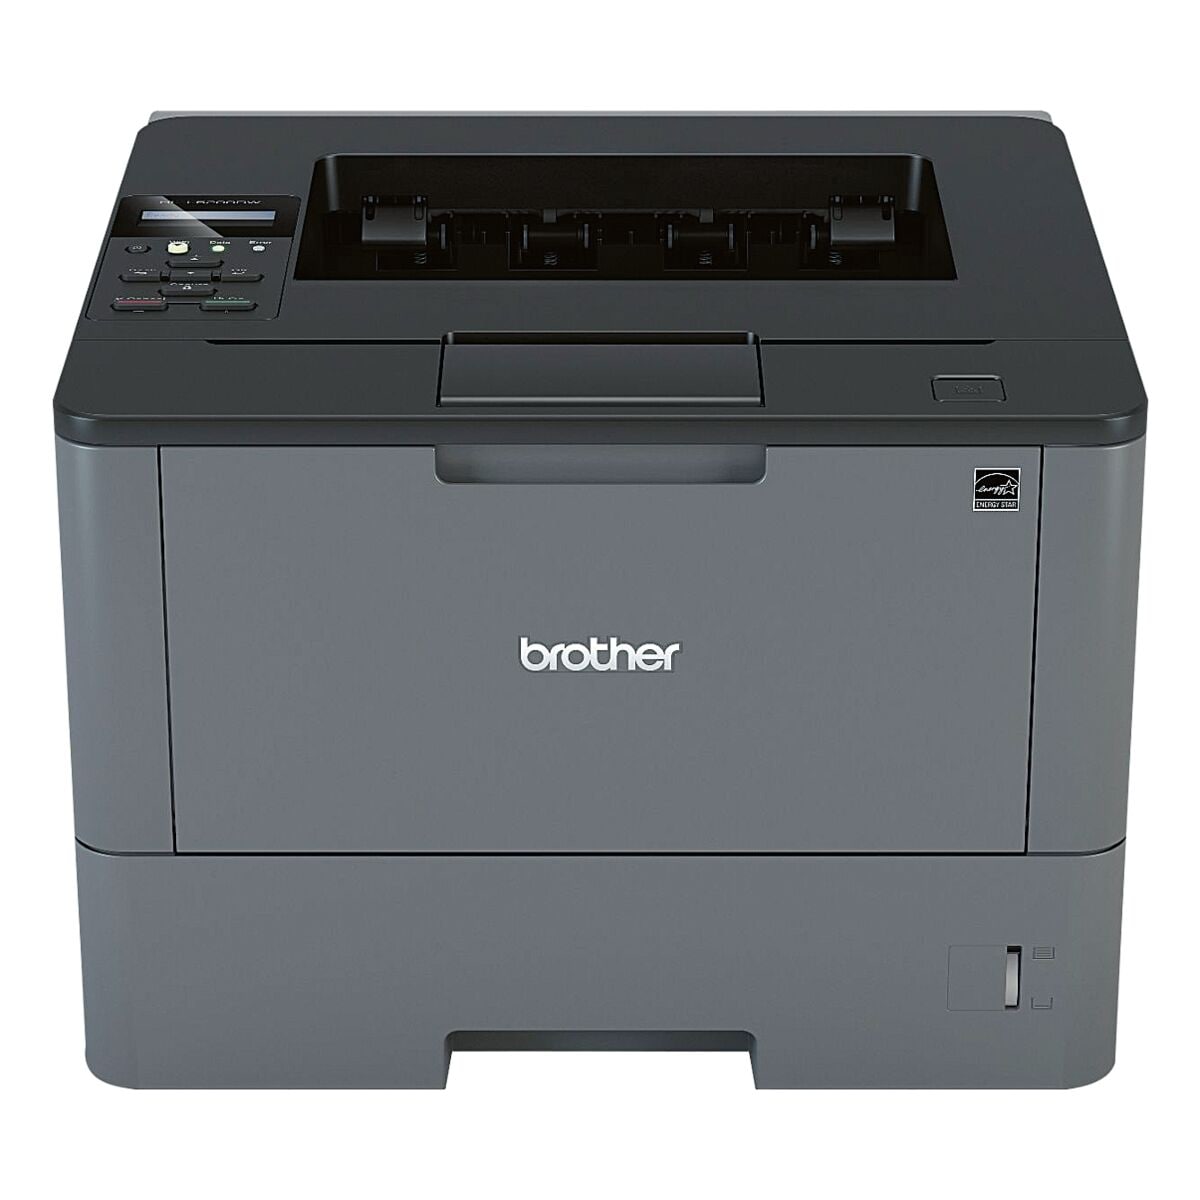 Brother HL-L5200DW Laserdrucker, A4 schwarz wei Laserdrucker, 1200 x 1200 dpi, mit WLAN und LAN